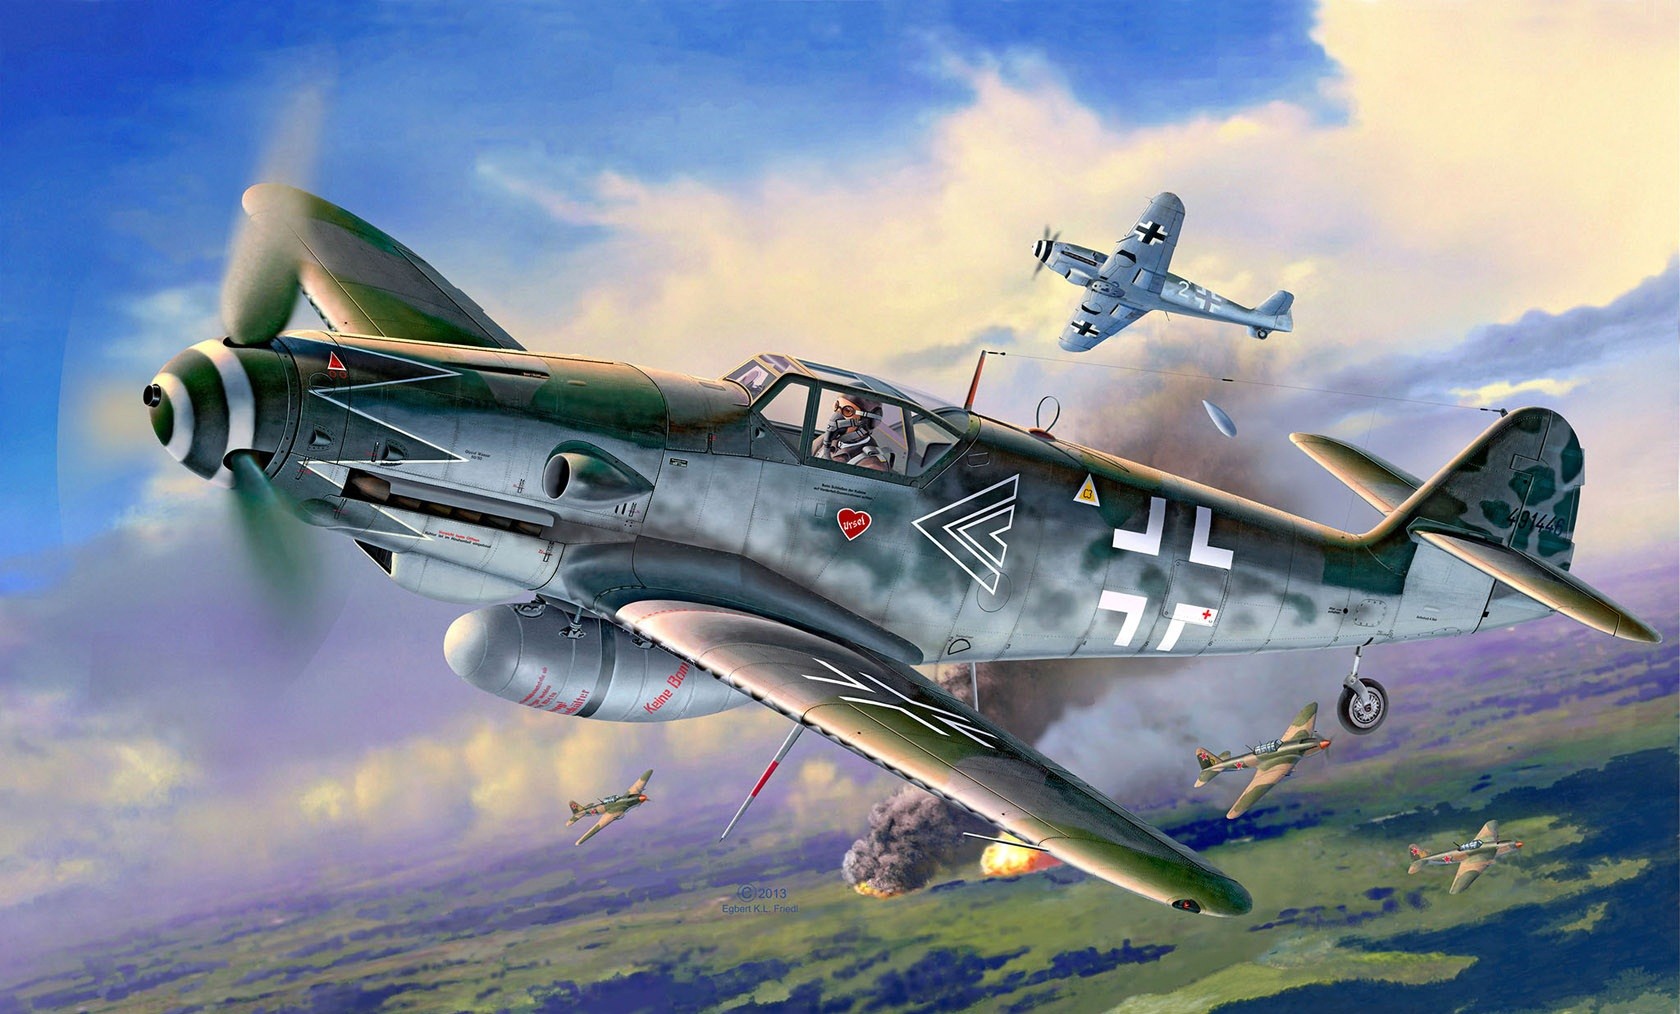 General 1680x1014 Messerschmitt Messerschmitt Bf 109 Luftwaffe artwork military aircraft World War II Germany vehicle aircraft